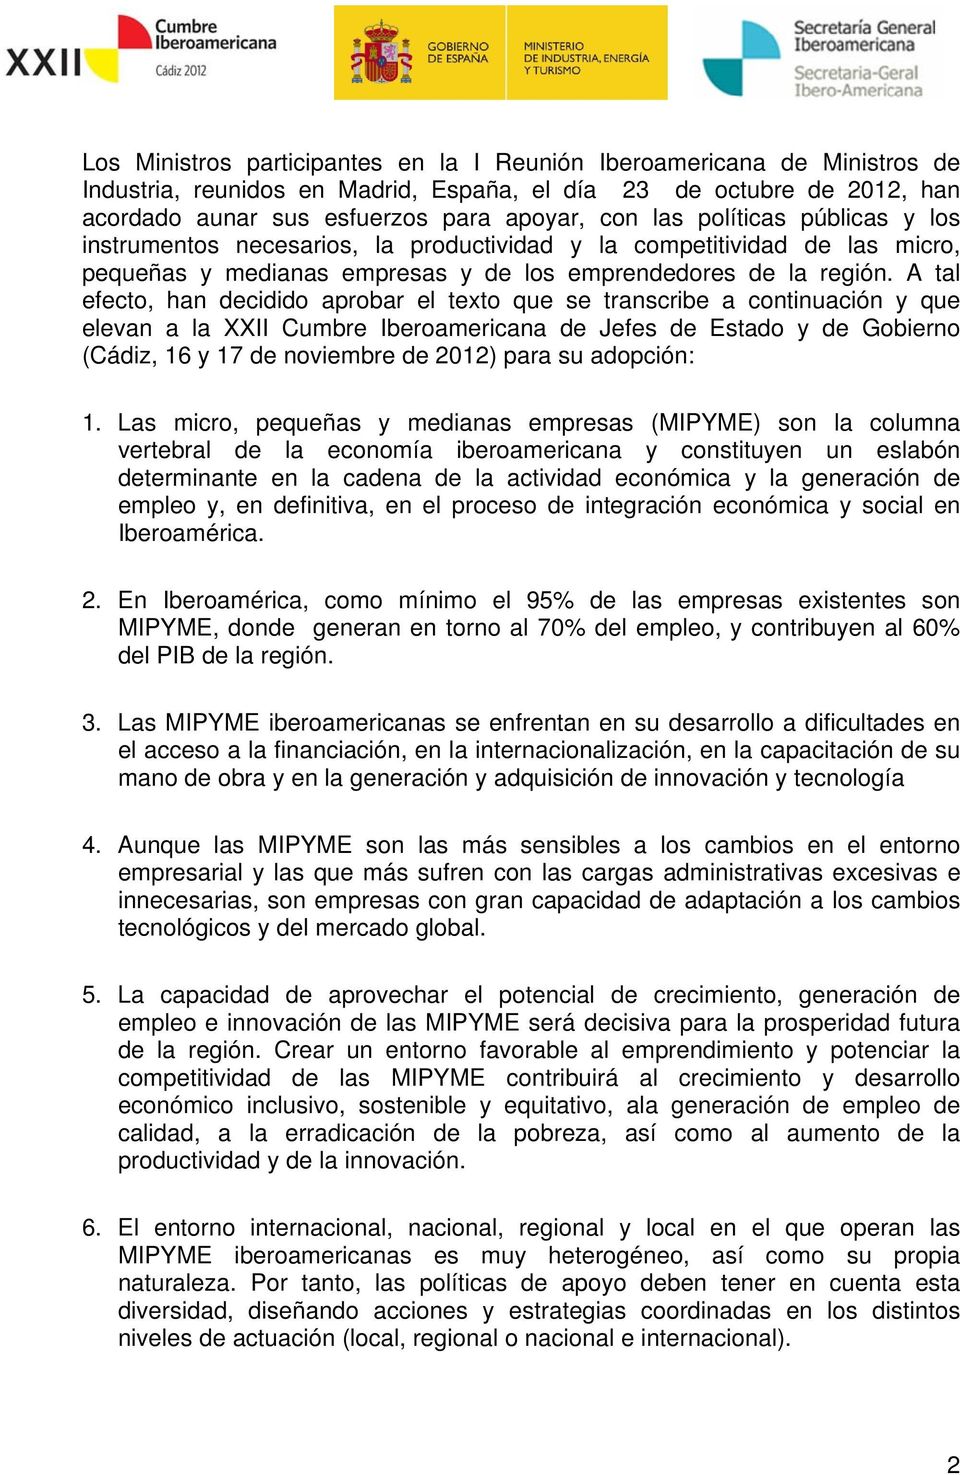 A tal efecto, han decidido aprobar el texto que se transcribe a continuación y que elevan a la XXII Cumbre Iberoamericana de Jefes de Estado y de Gobierno (Cádiz, 16 y 17 de noviembre de 2012) para